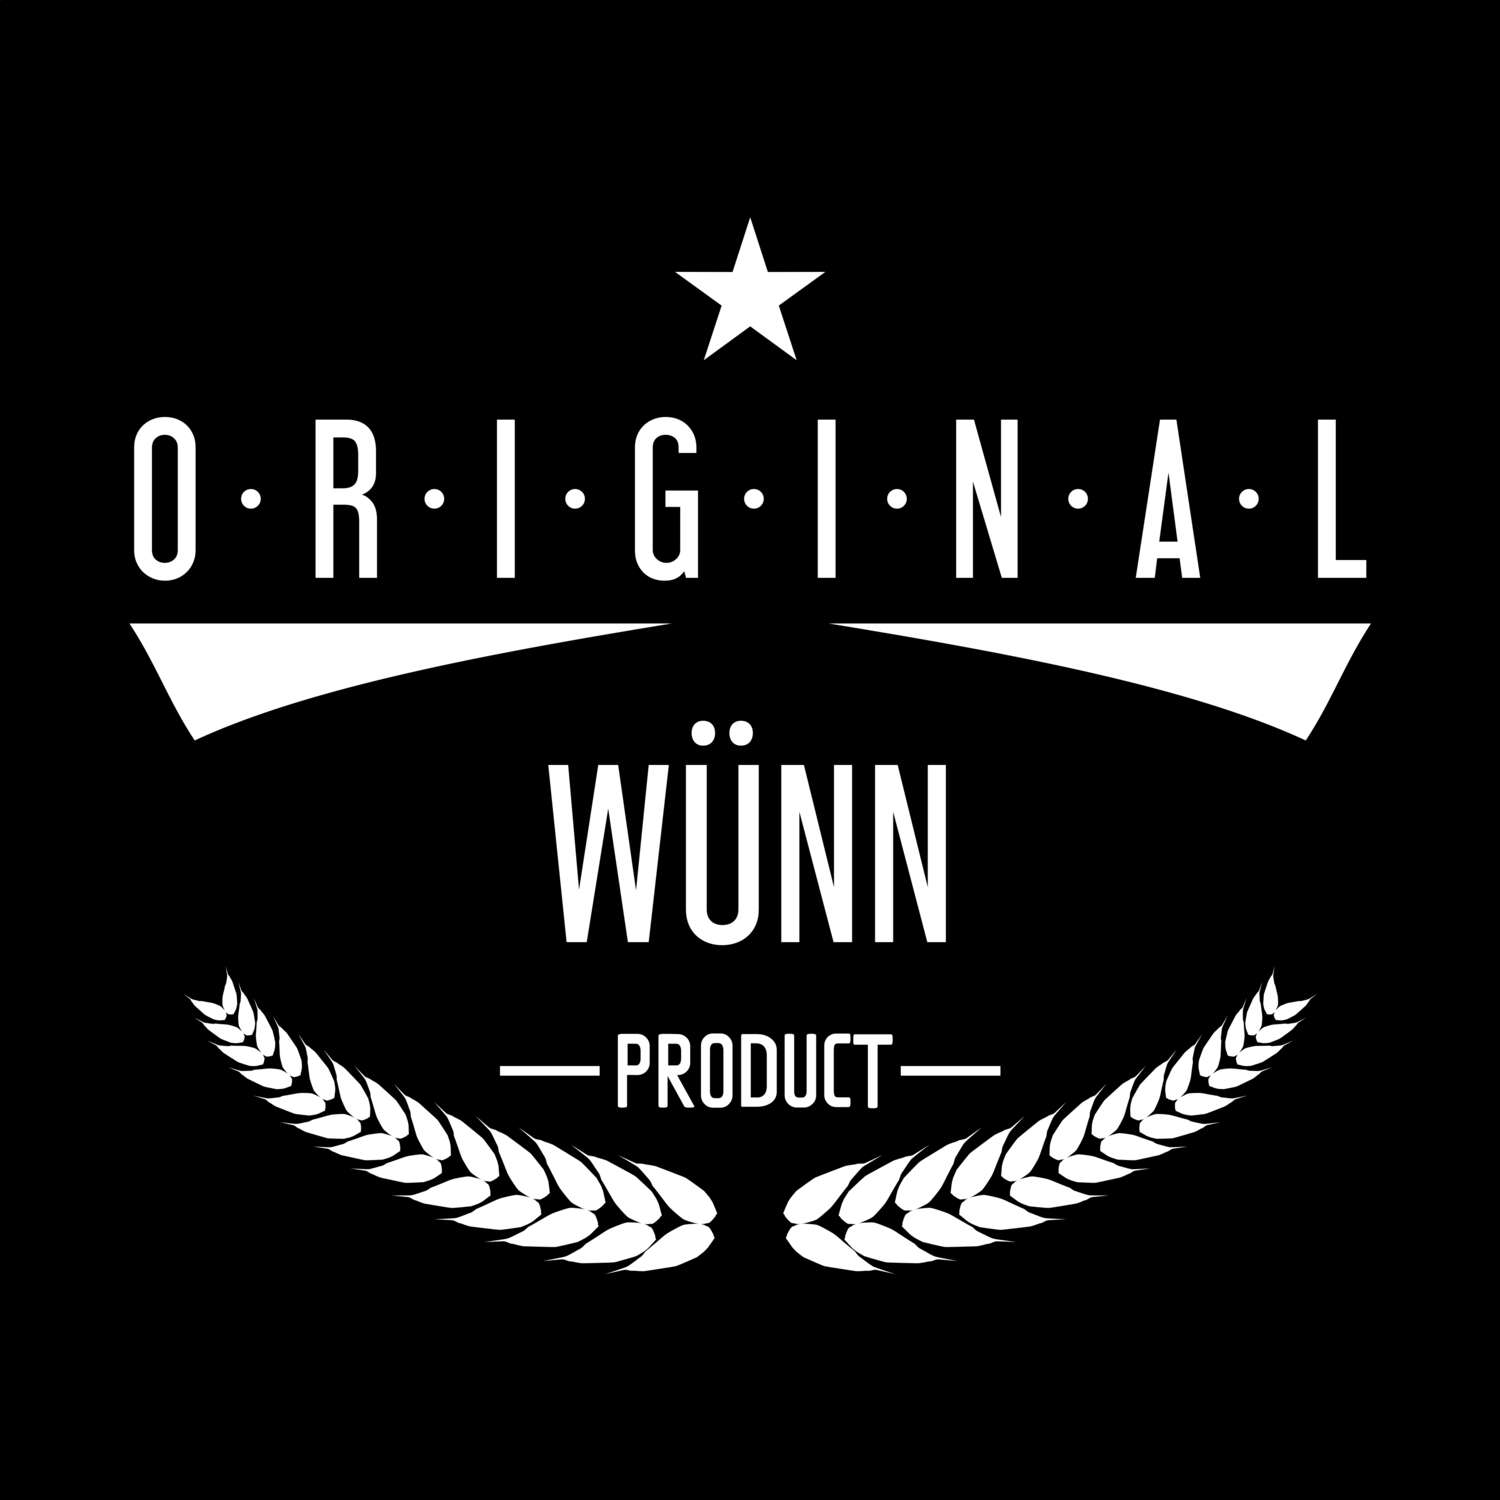 Wünn T-Shirt »Original Product«